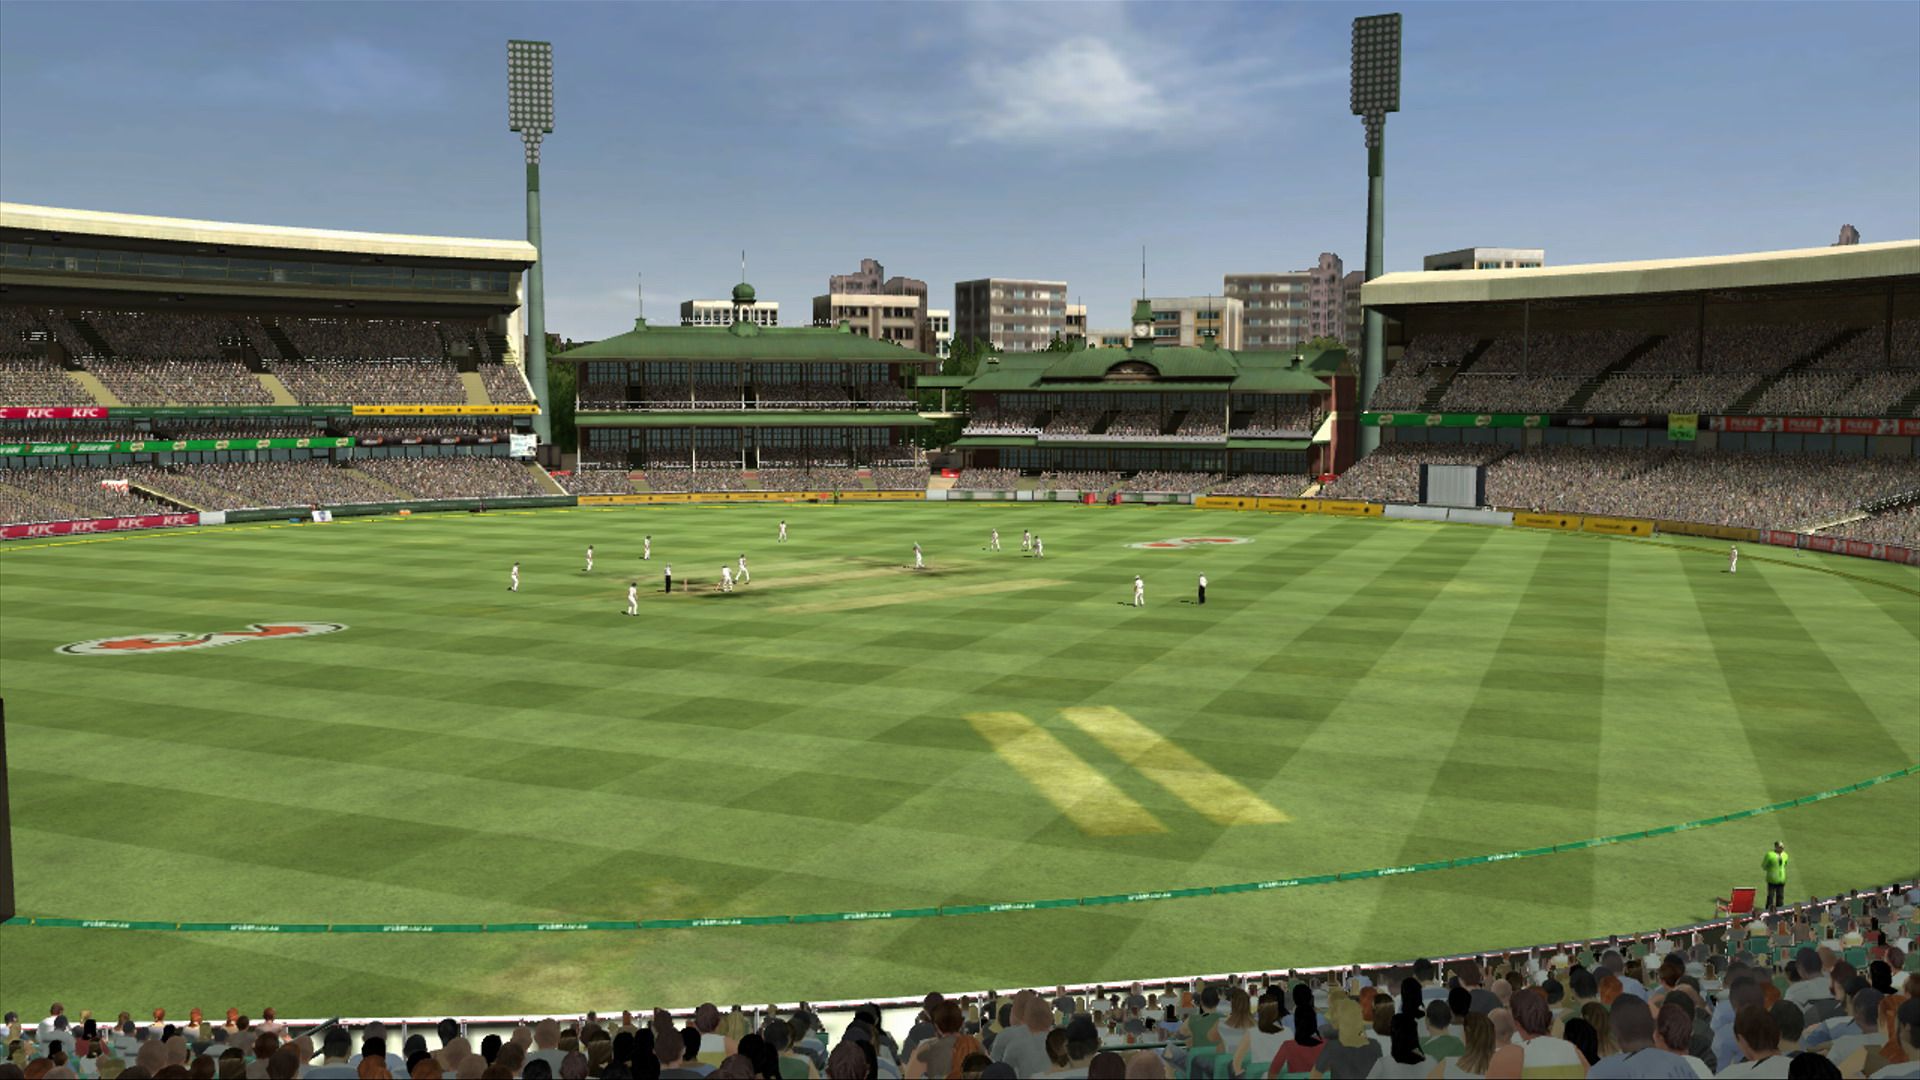 Крикет граунд. Cricket Stadium. Поле для крикета. Cricket ground. Фотография крикета стадион.